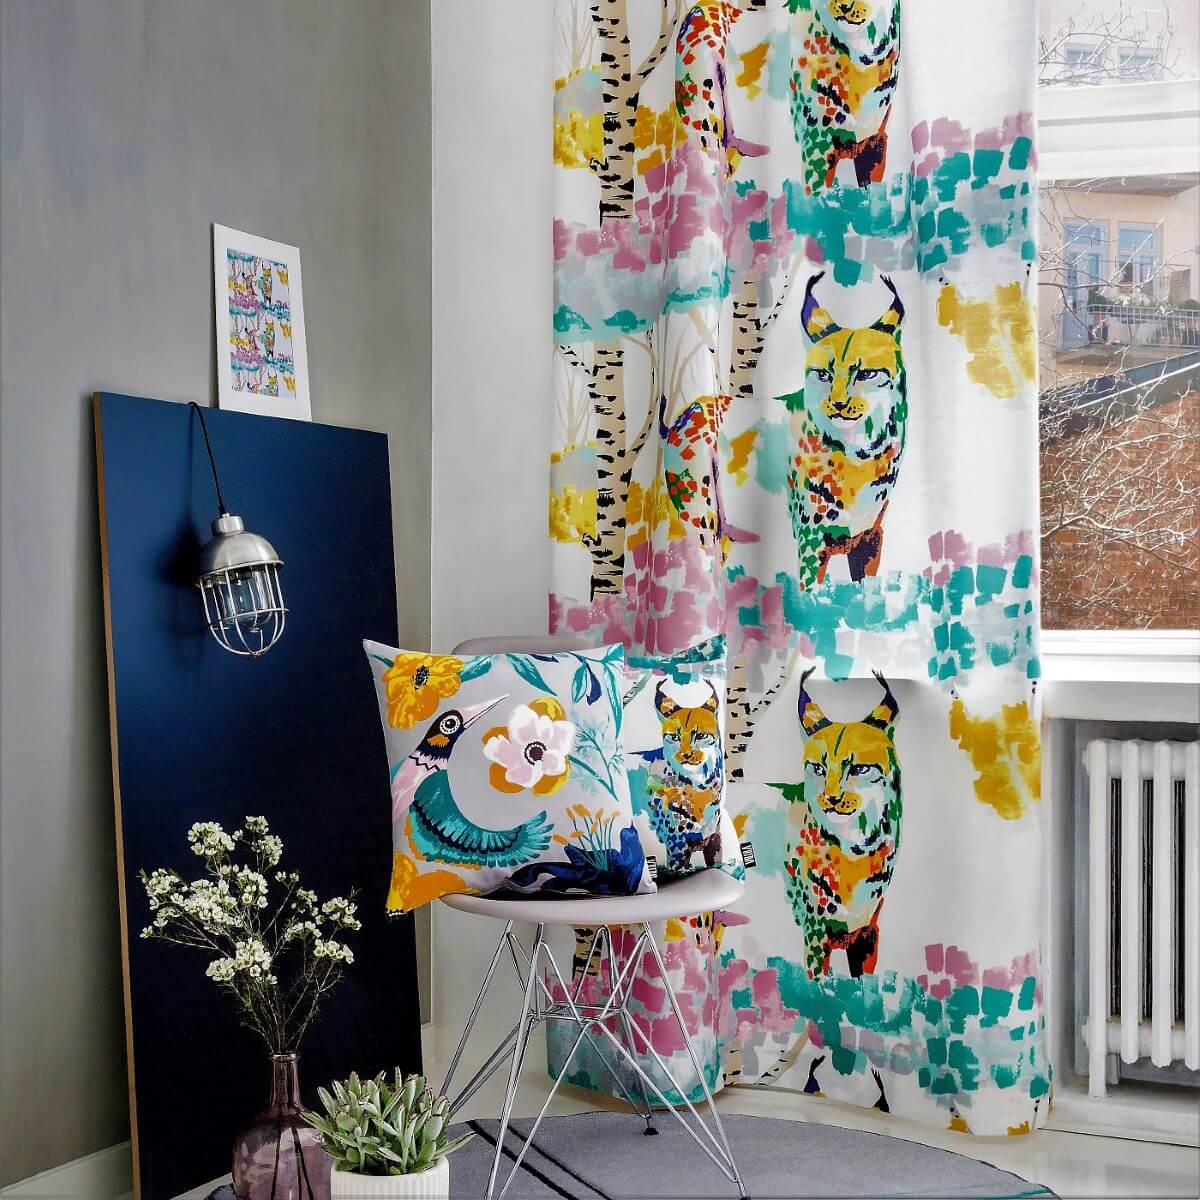 Poszewka dekoracyjna kolorowa ILVES w salonie skandynawskim. Bawełniana kolorowa poszewka na poduszkę z rysiem leżąca na nowoczesnym krześle. Widoczne białe okno, kolorowa zasłona, lampa oraz kwiaty